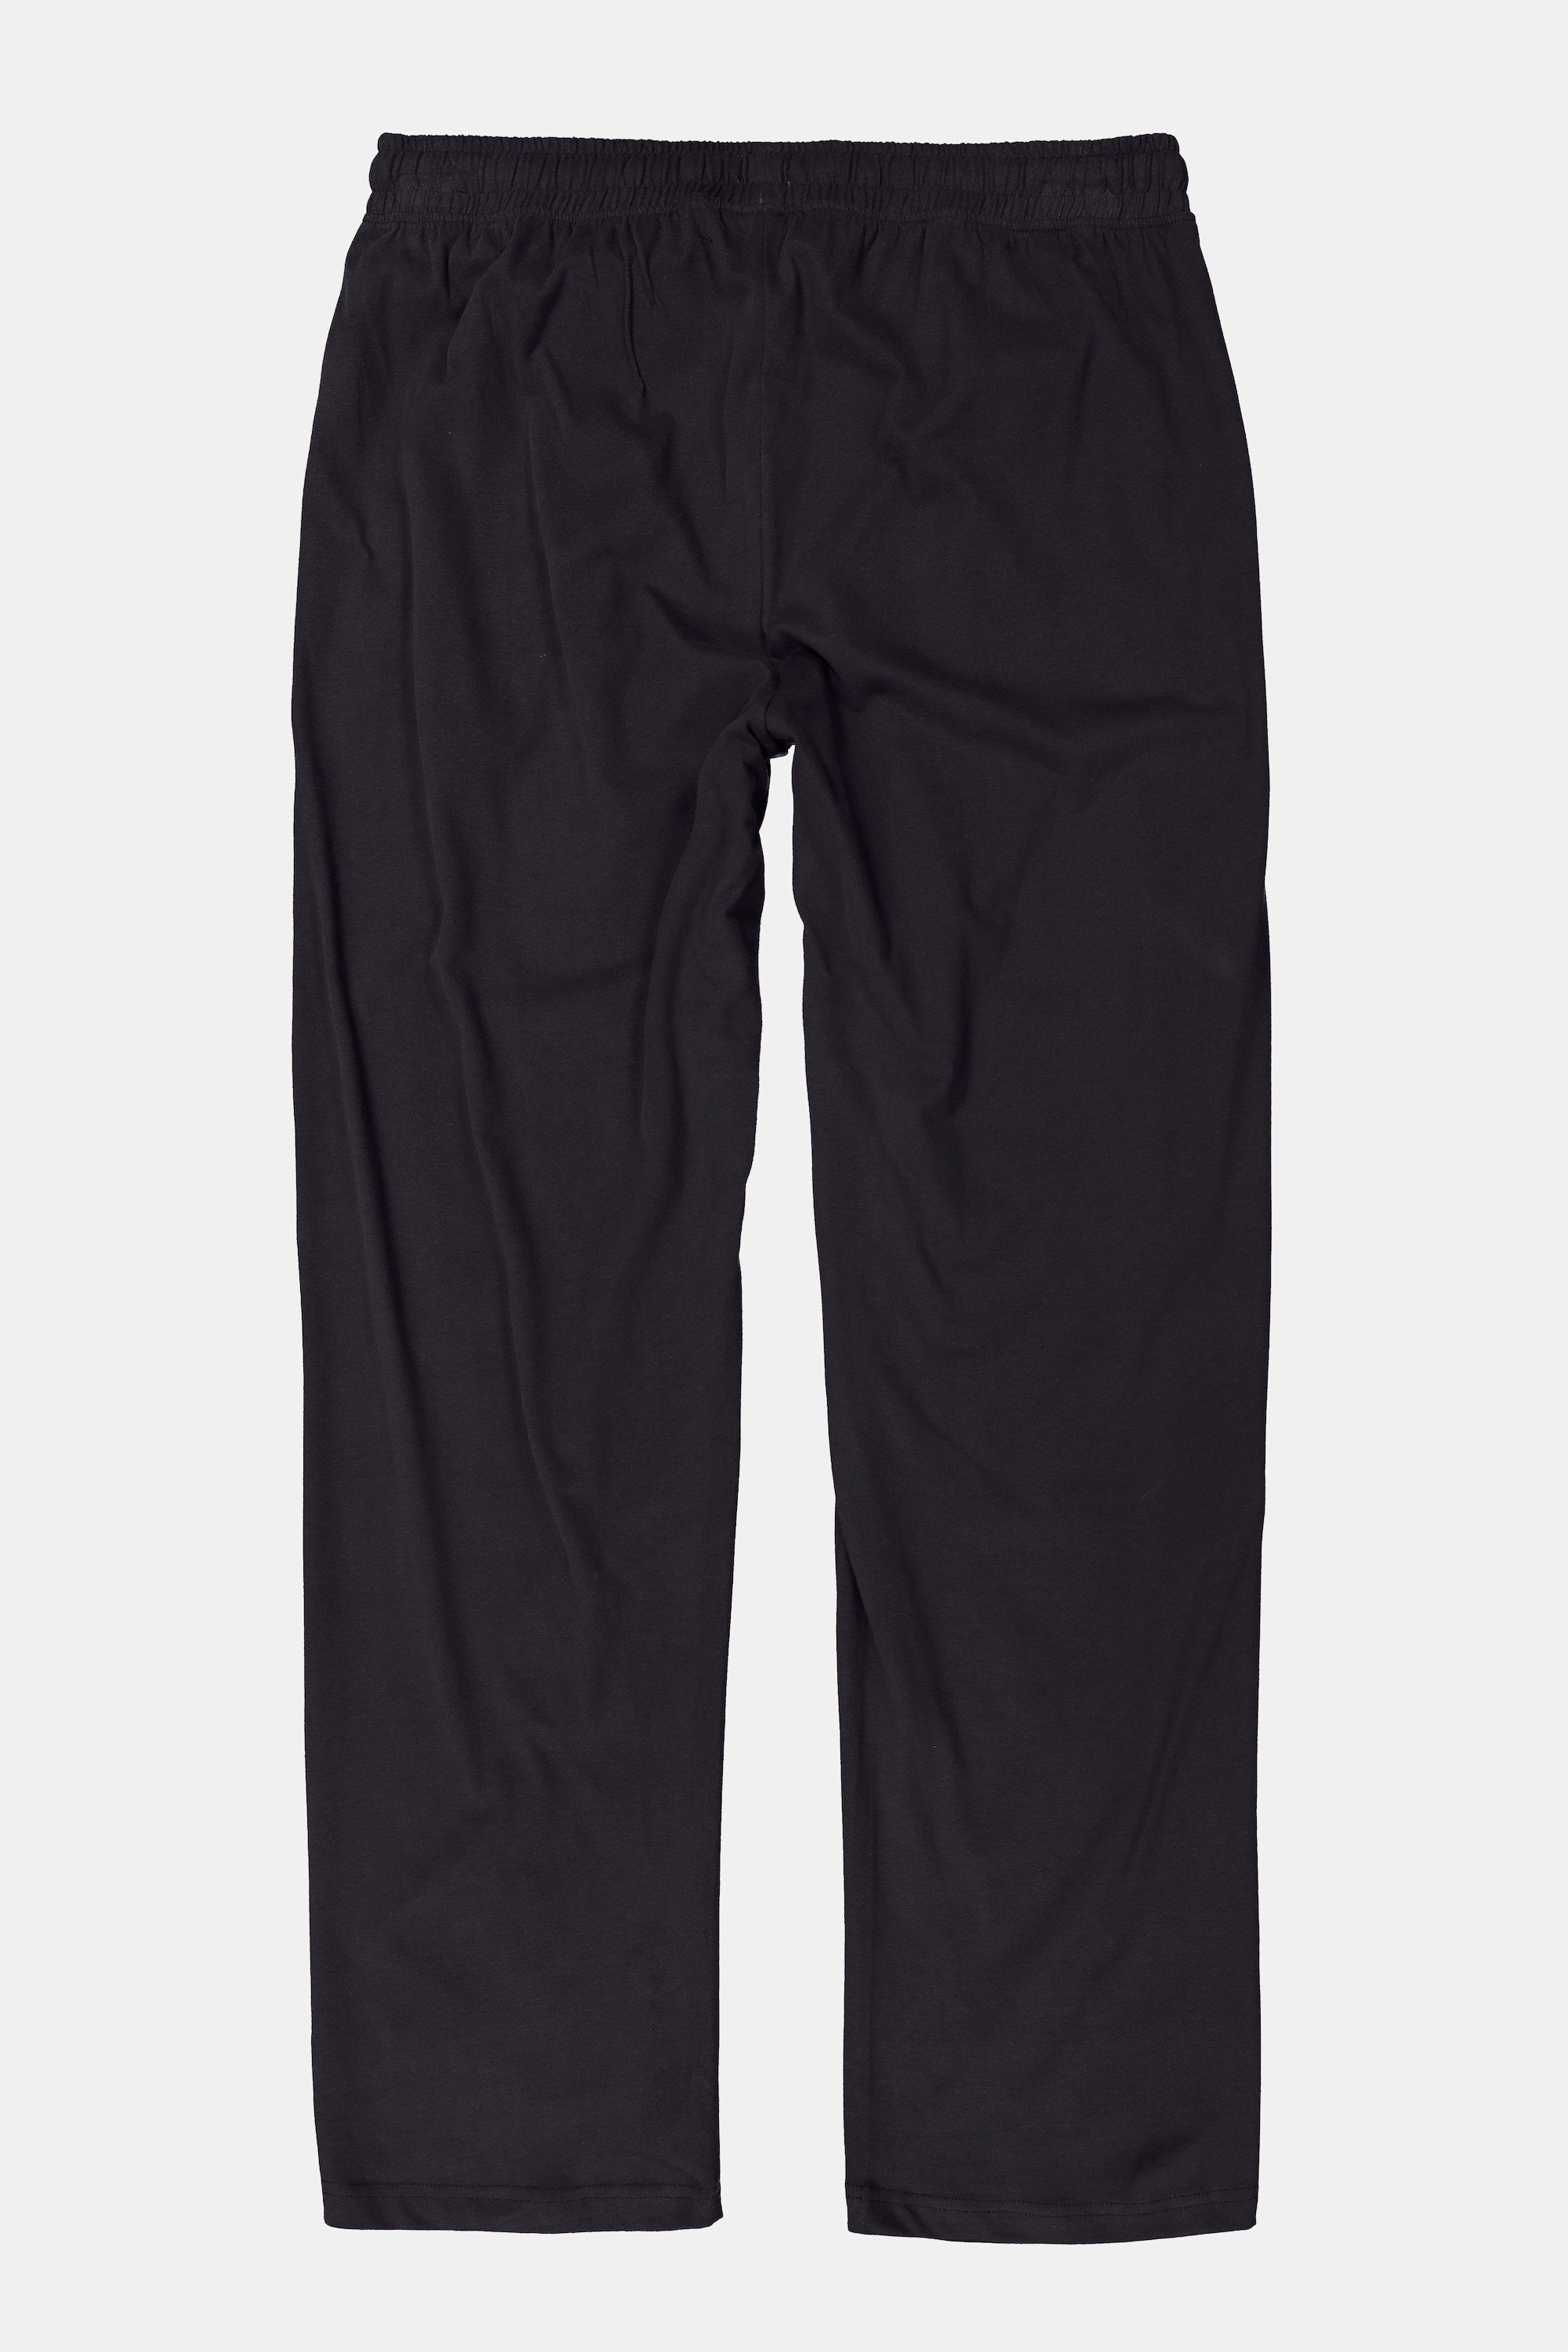 Elastikbund Homewear Schlafanzug-Hose schwarz Form JP1880 lange Schlafanzug